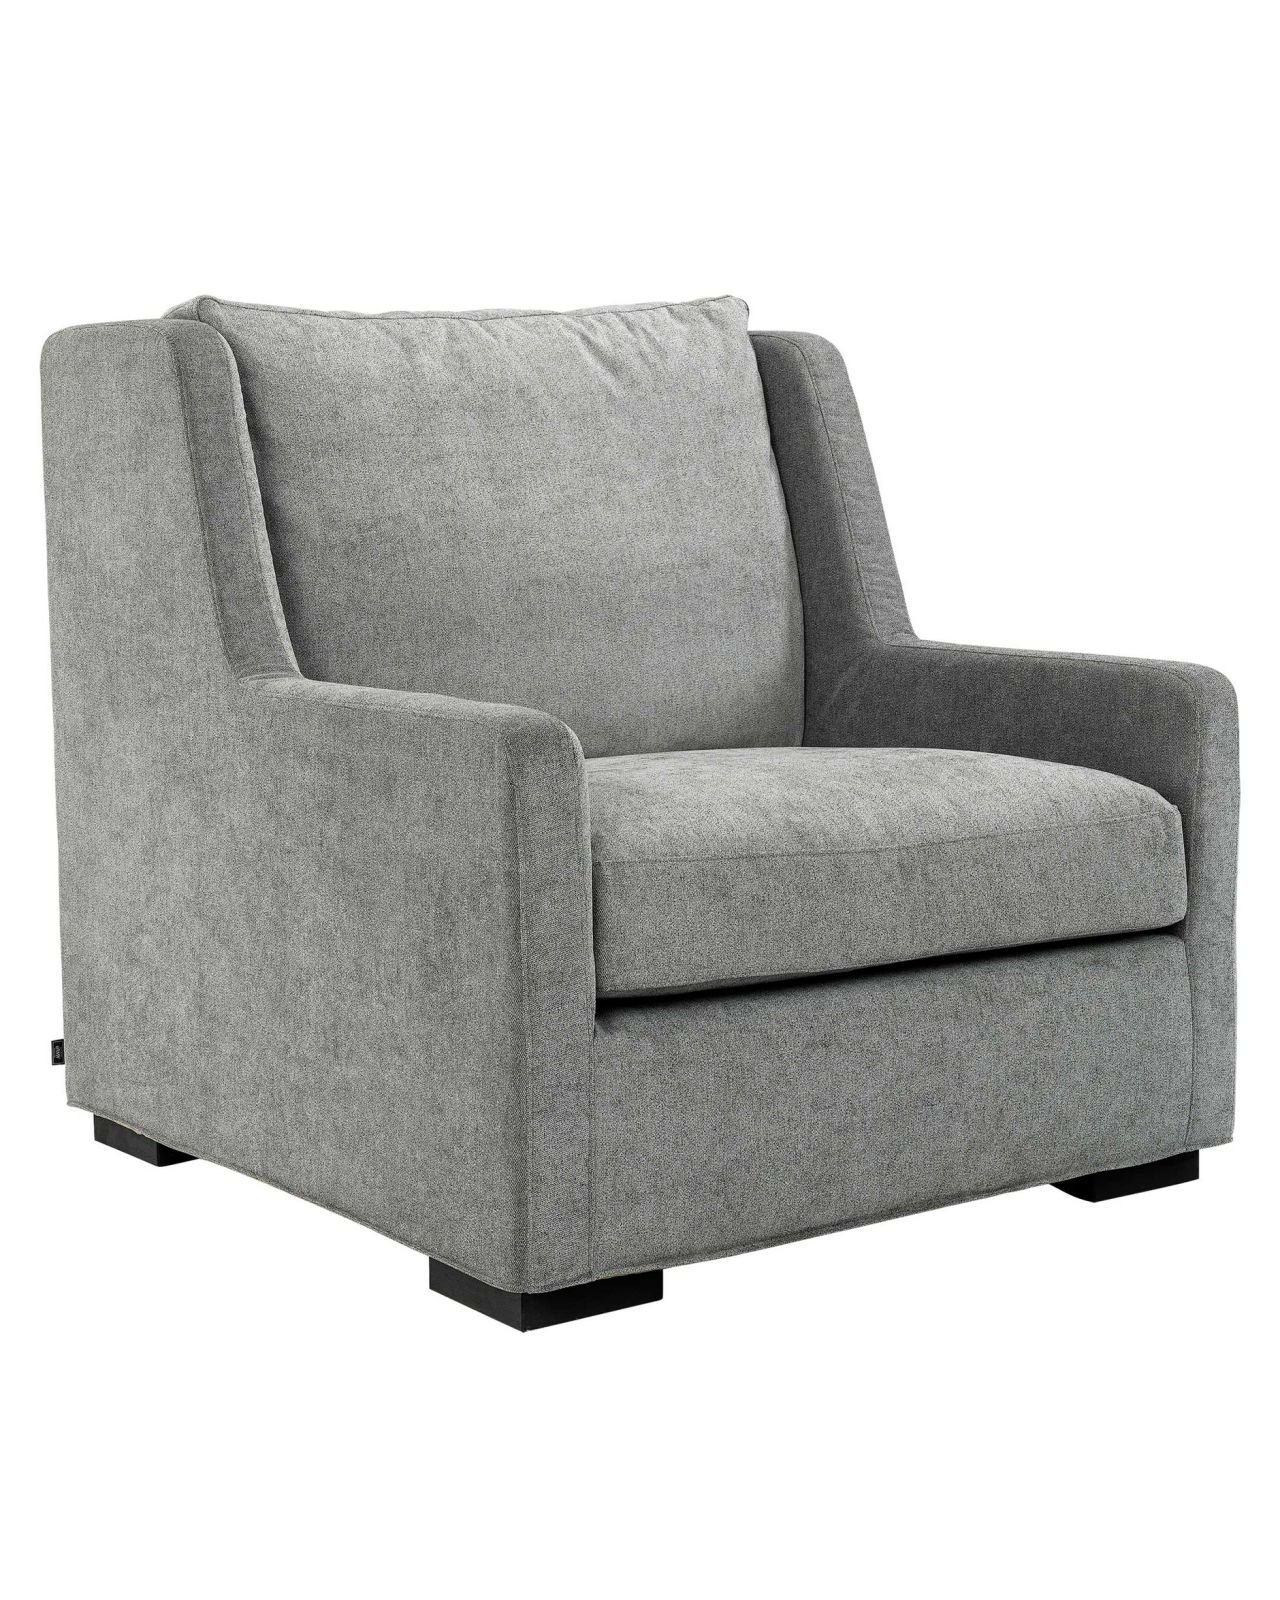 Dover armchair gray